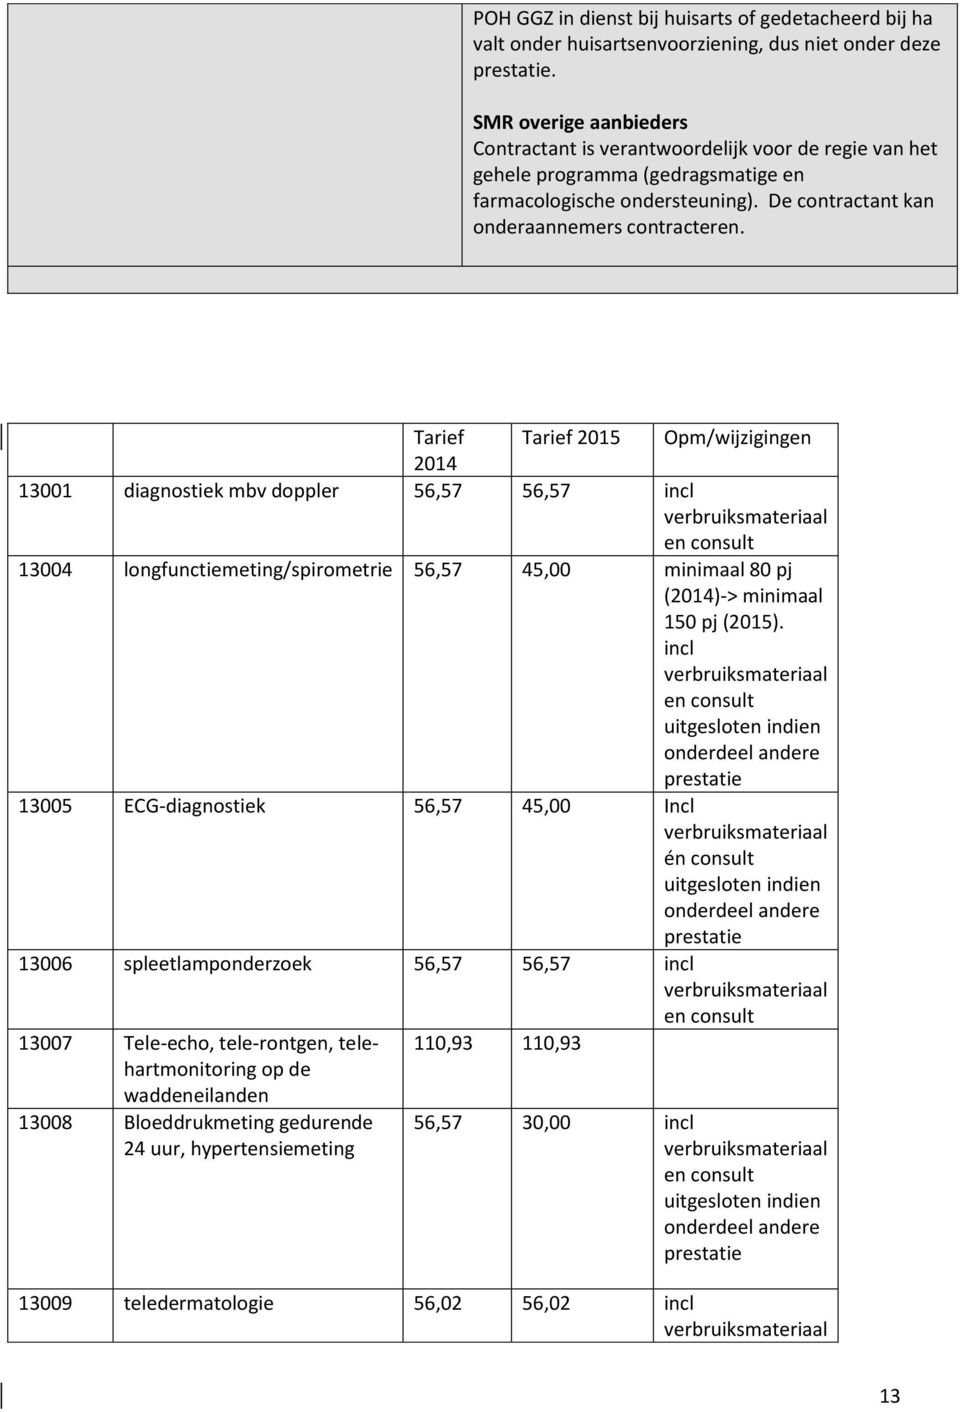 Tarief Tarief 2015 Opm/wijzigingen 2014 13001 diagnostiek mbv doppler 56,57 56,57 incl verbruiksmateriaal en consult 13004 longfunctiemeting/spirometrie 56,57 45,00 minimaal 80 pj (2014)-> minimaal